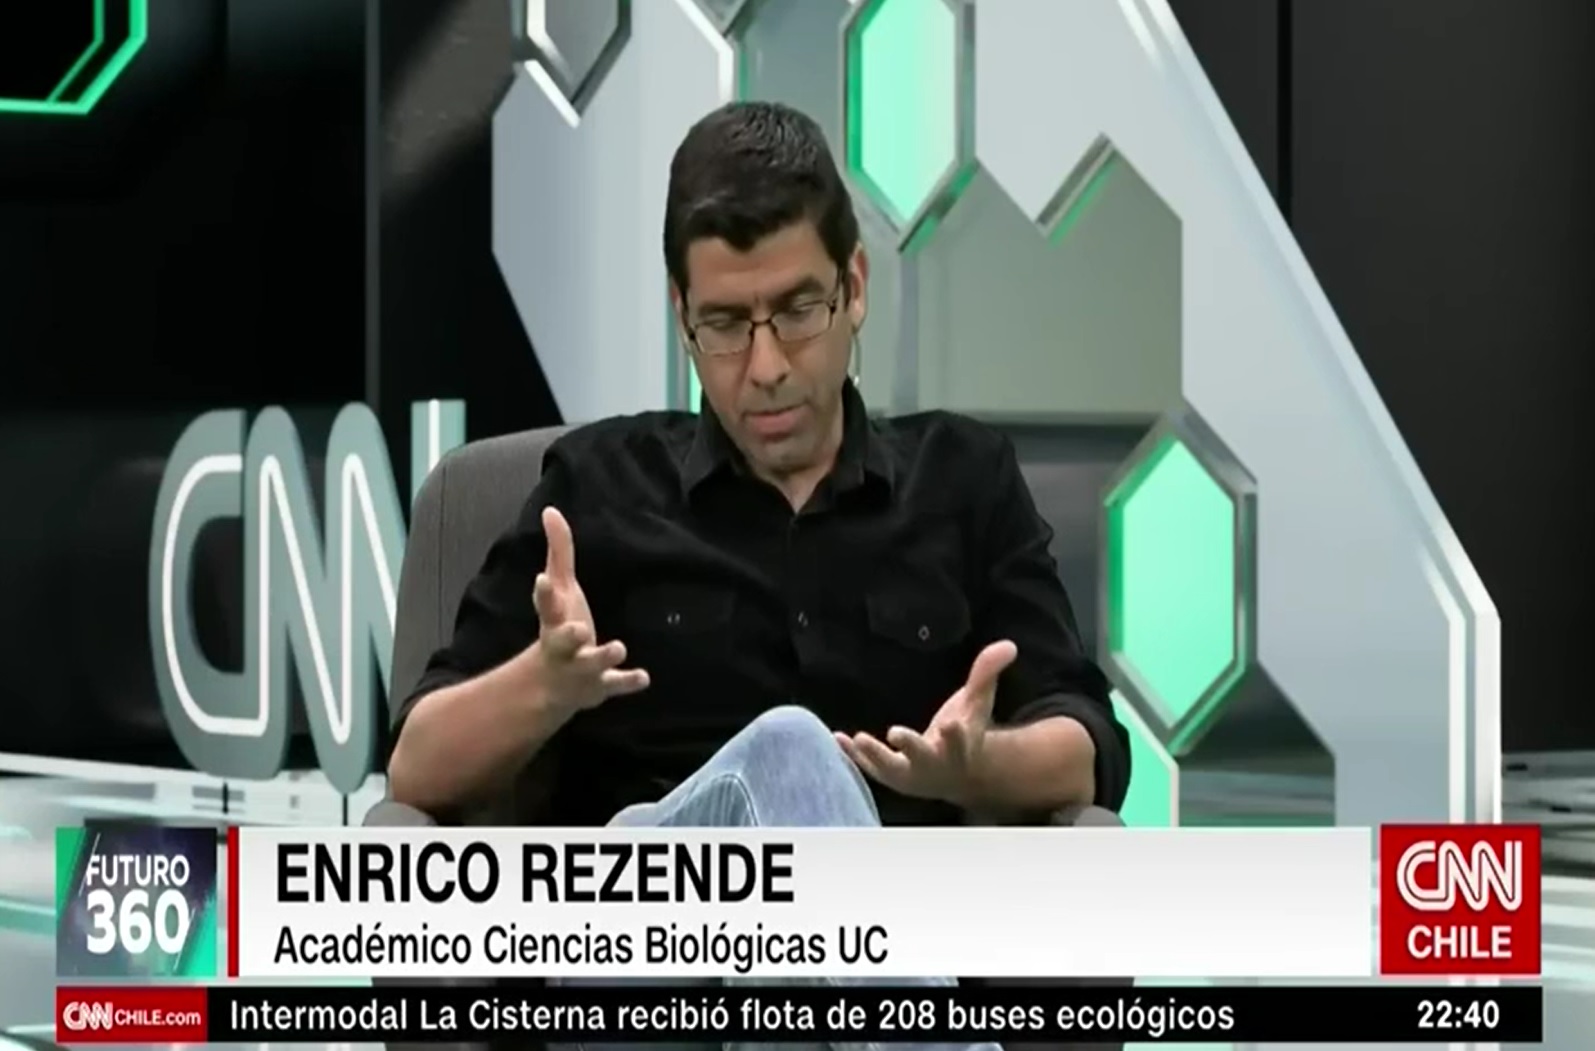 Entrevista en CNN Chile a Enrico Rezende, académico Ciencias Biológicas UC/C2030 UC